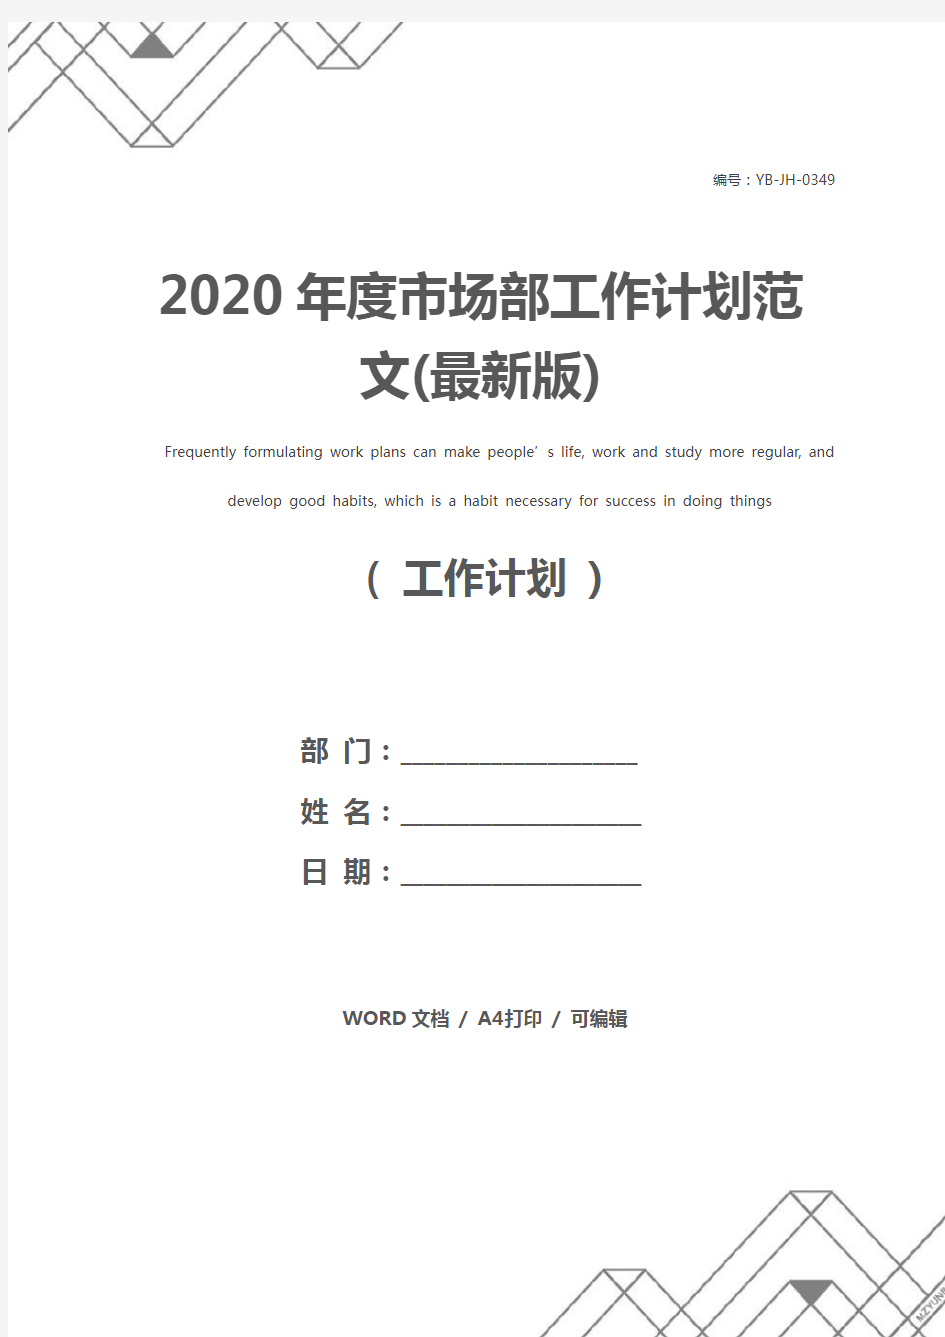 2020年度市场部工作计划范文(最新版)